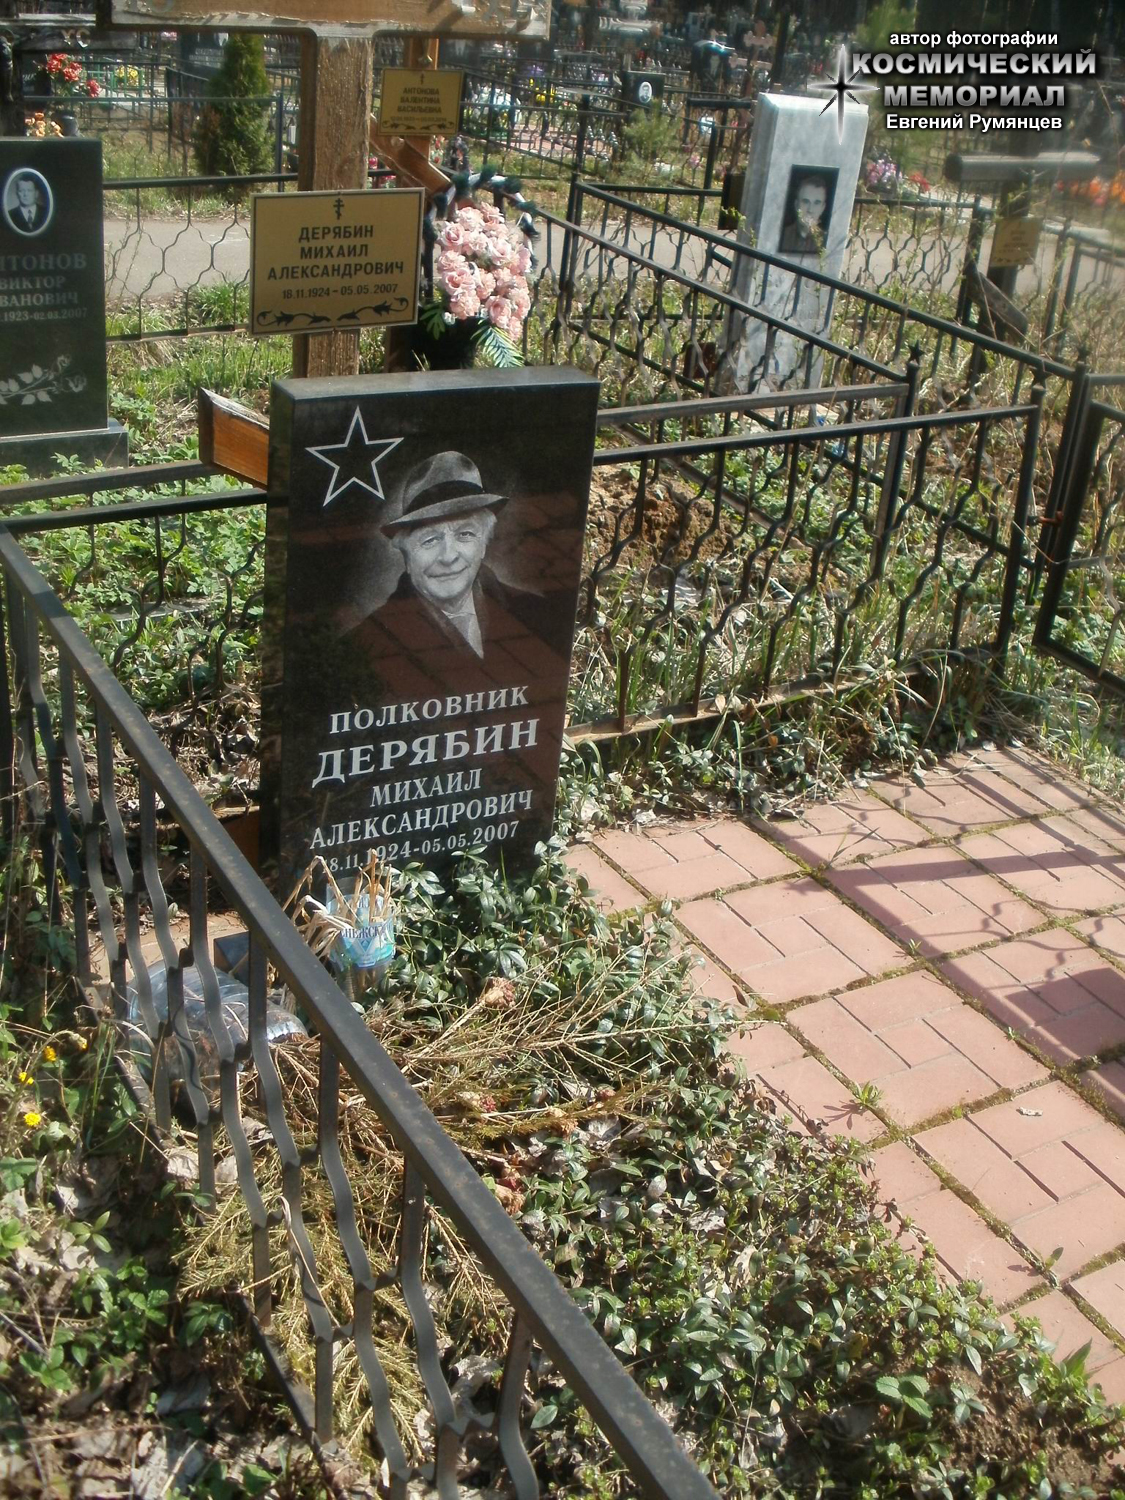 Надгробие на могиле Ветерана Великой Отечественной войны, полковника Дерябина Михаила Александровича